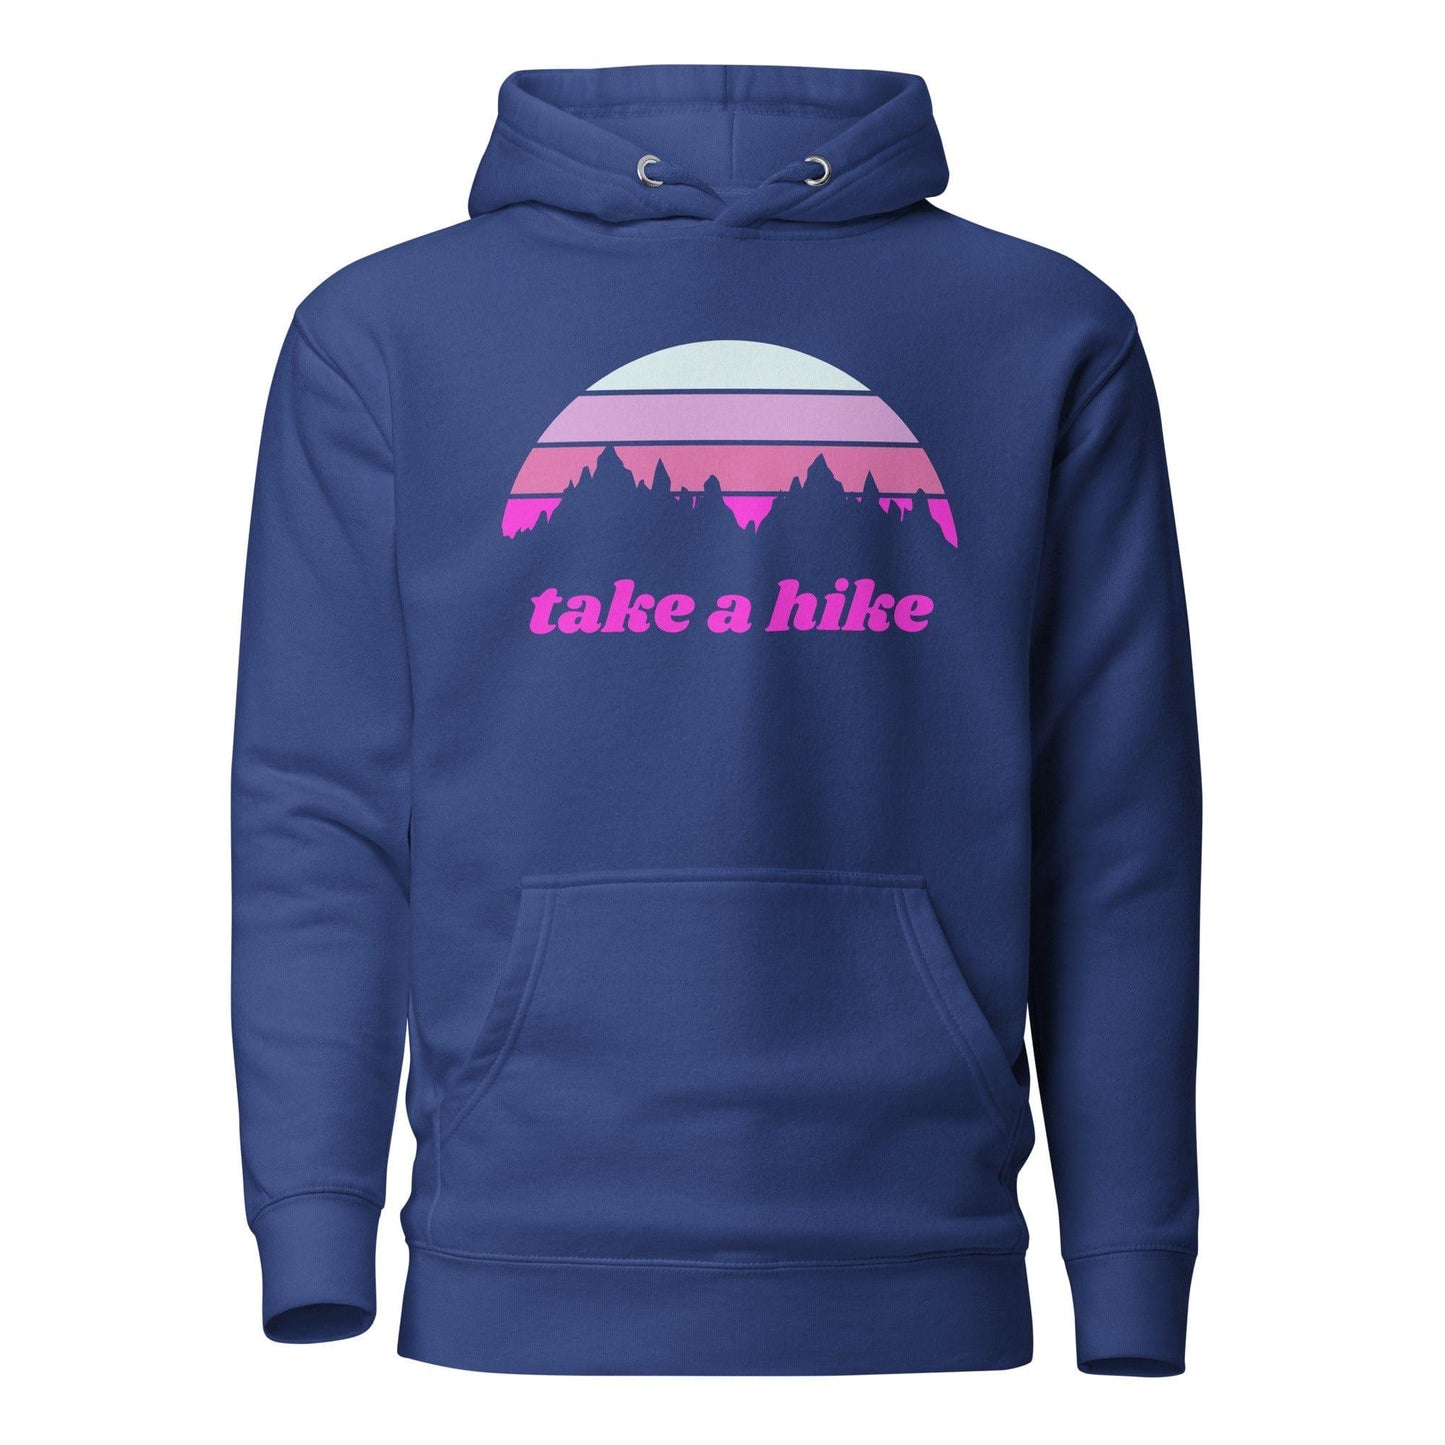 Take a Hike Hoodie - Adventure Threads Company